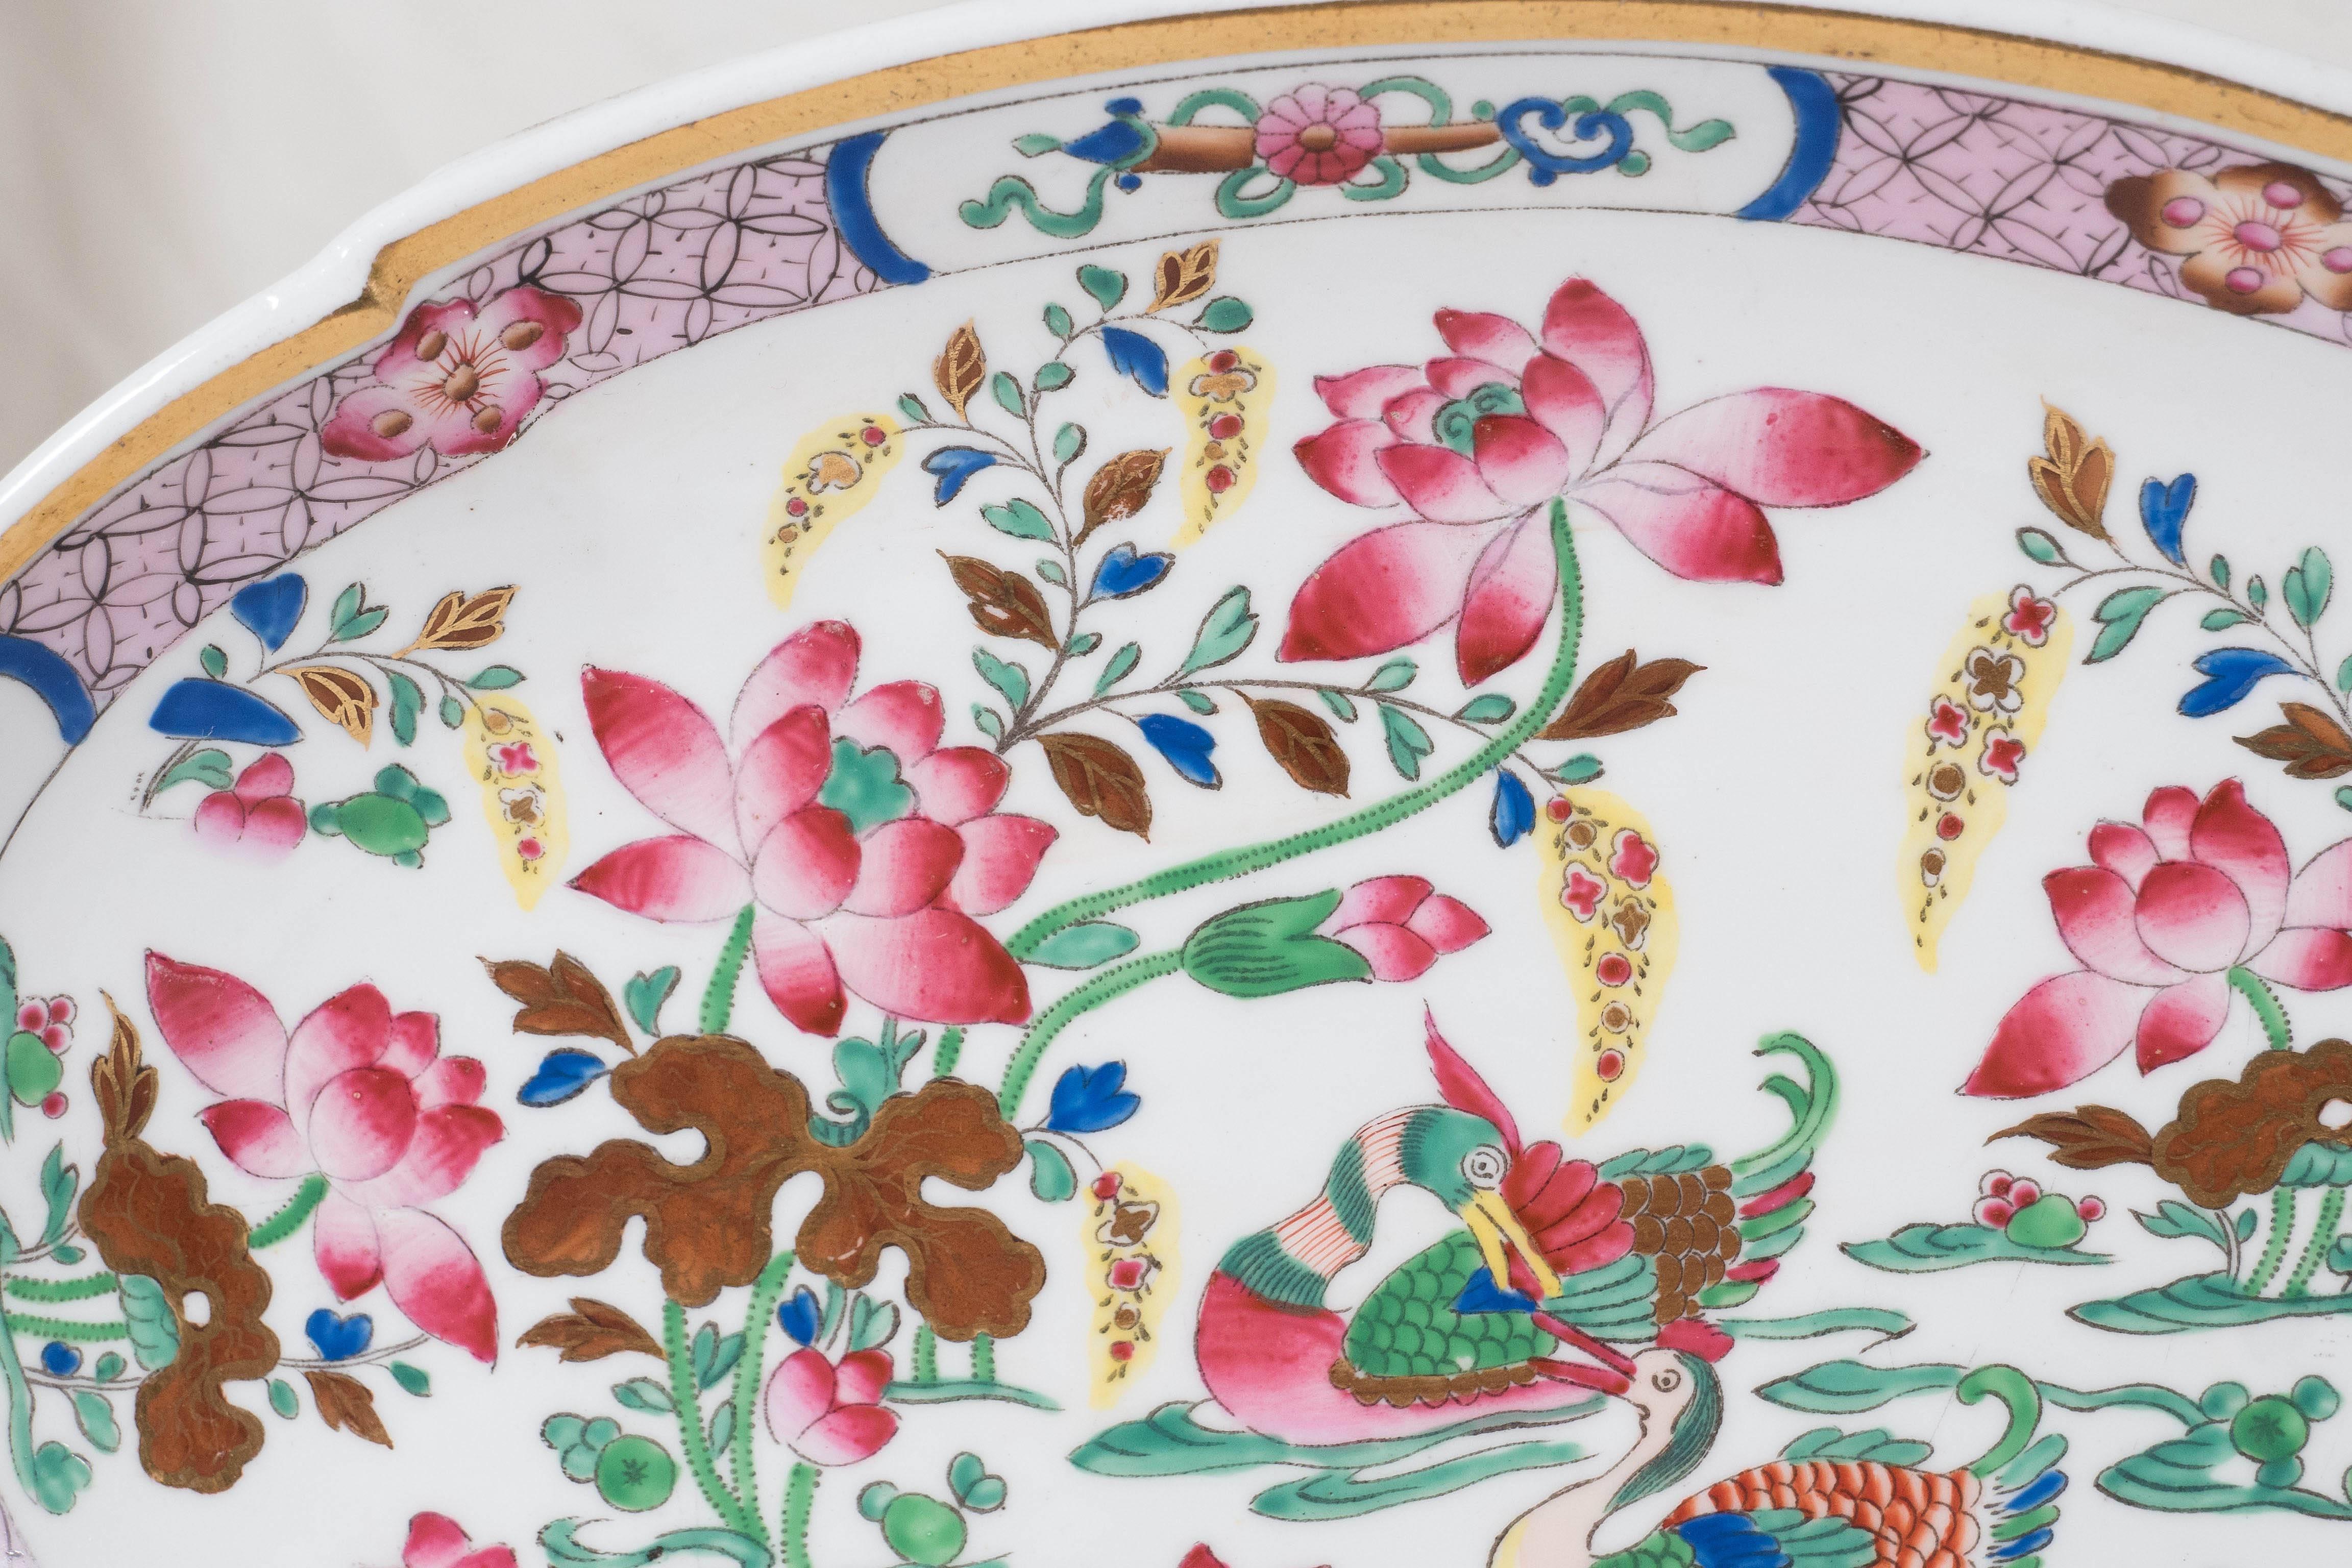 16 rosafarbene antike Porzellanteller mit Mandarin-Enten-Muster aus der Zeit um 1820 (19. Jahrhundert)